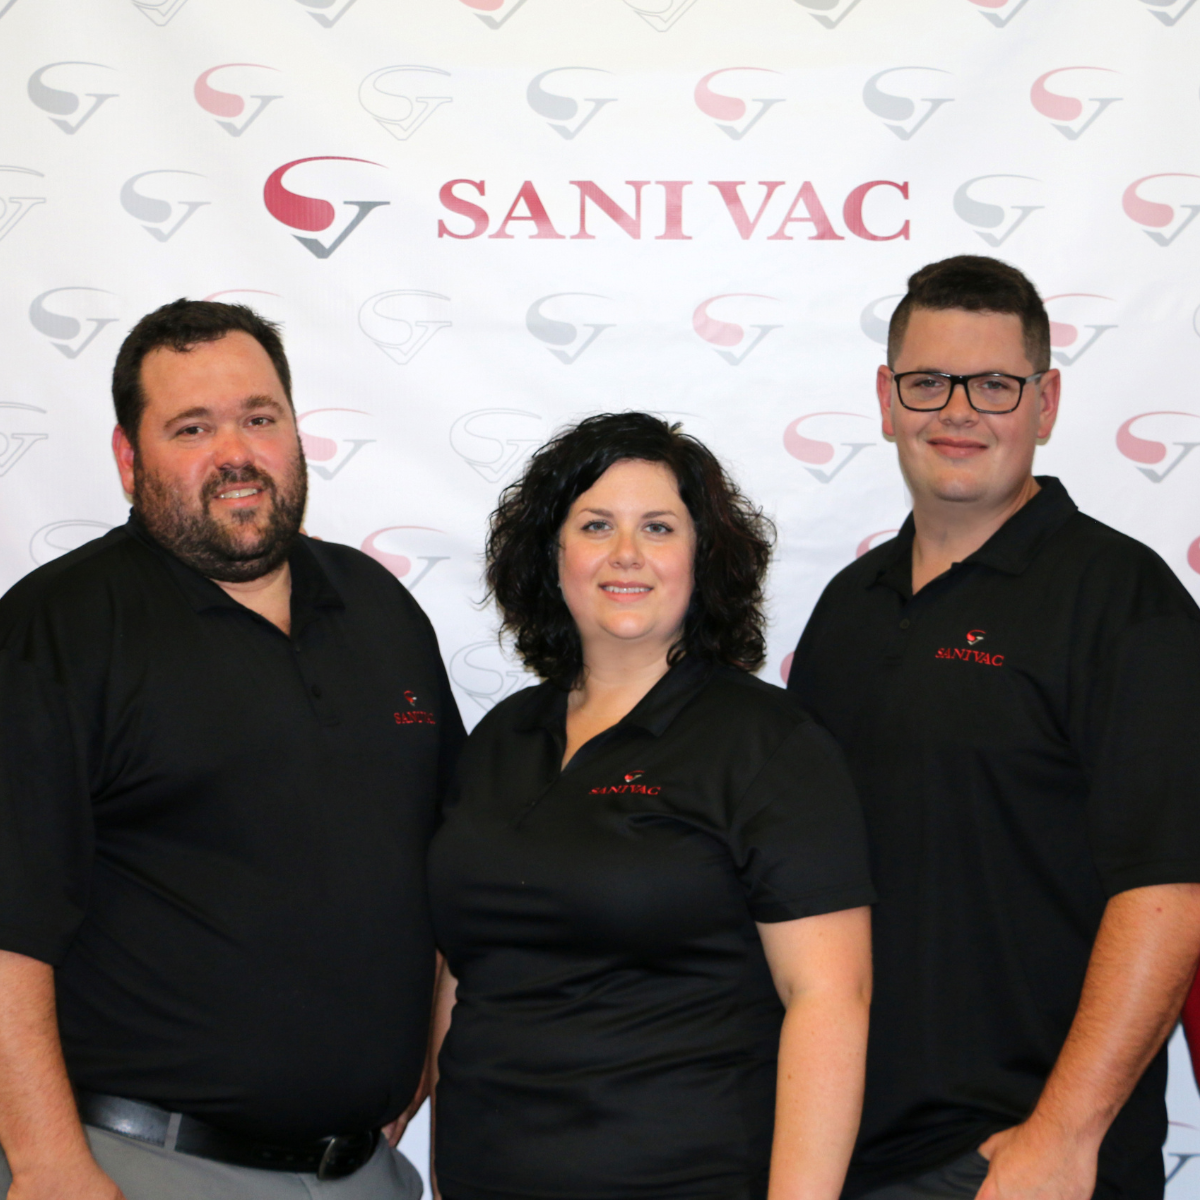 Notre Blogue - Sanivac